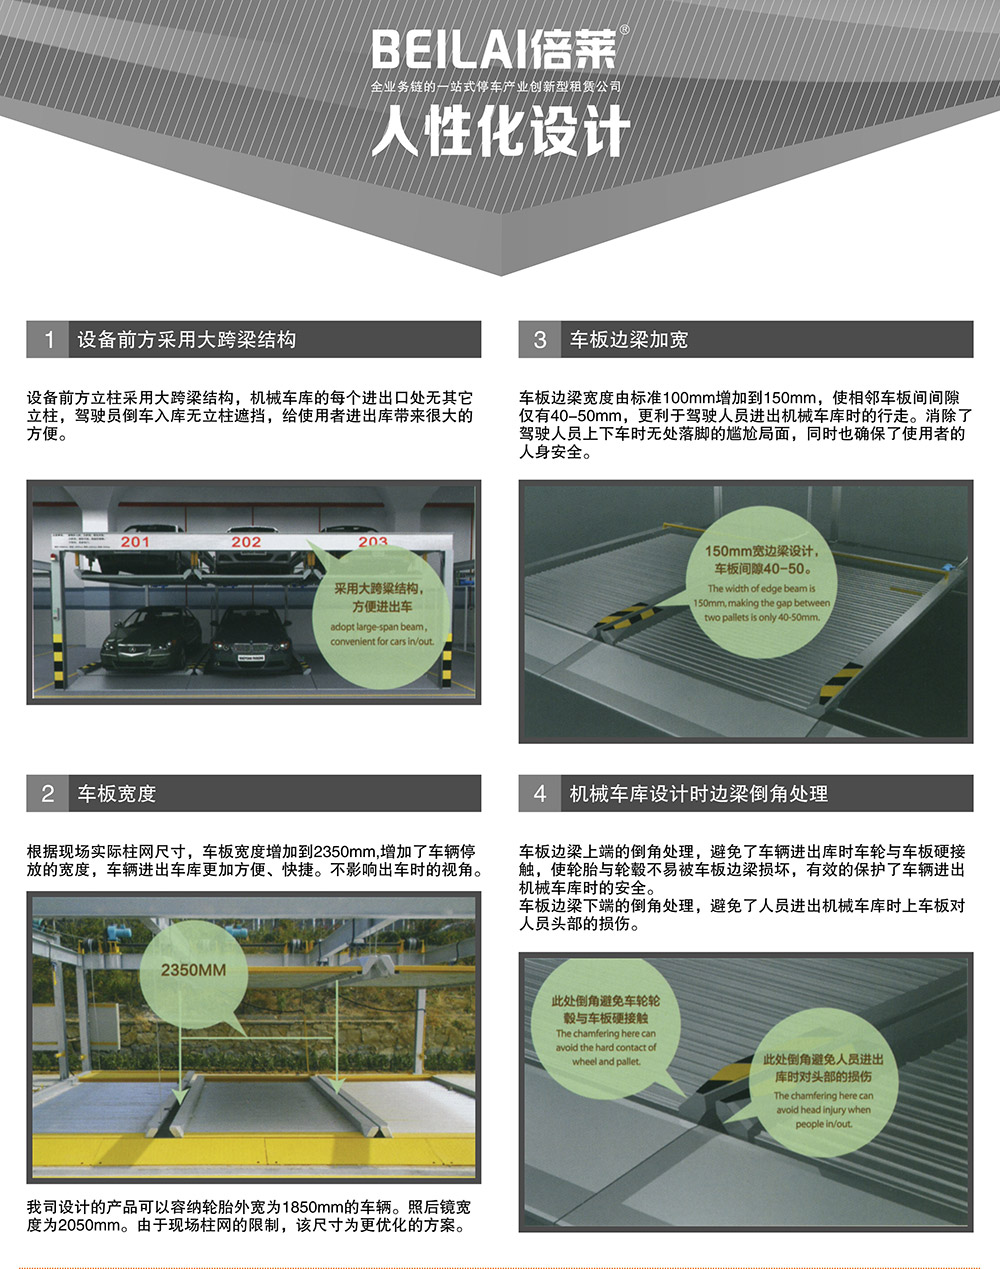 四川成都PSH升降横移停车设备人性化设计.jpg